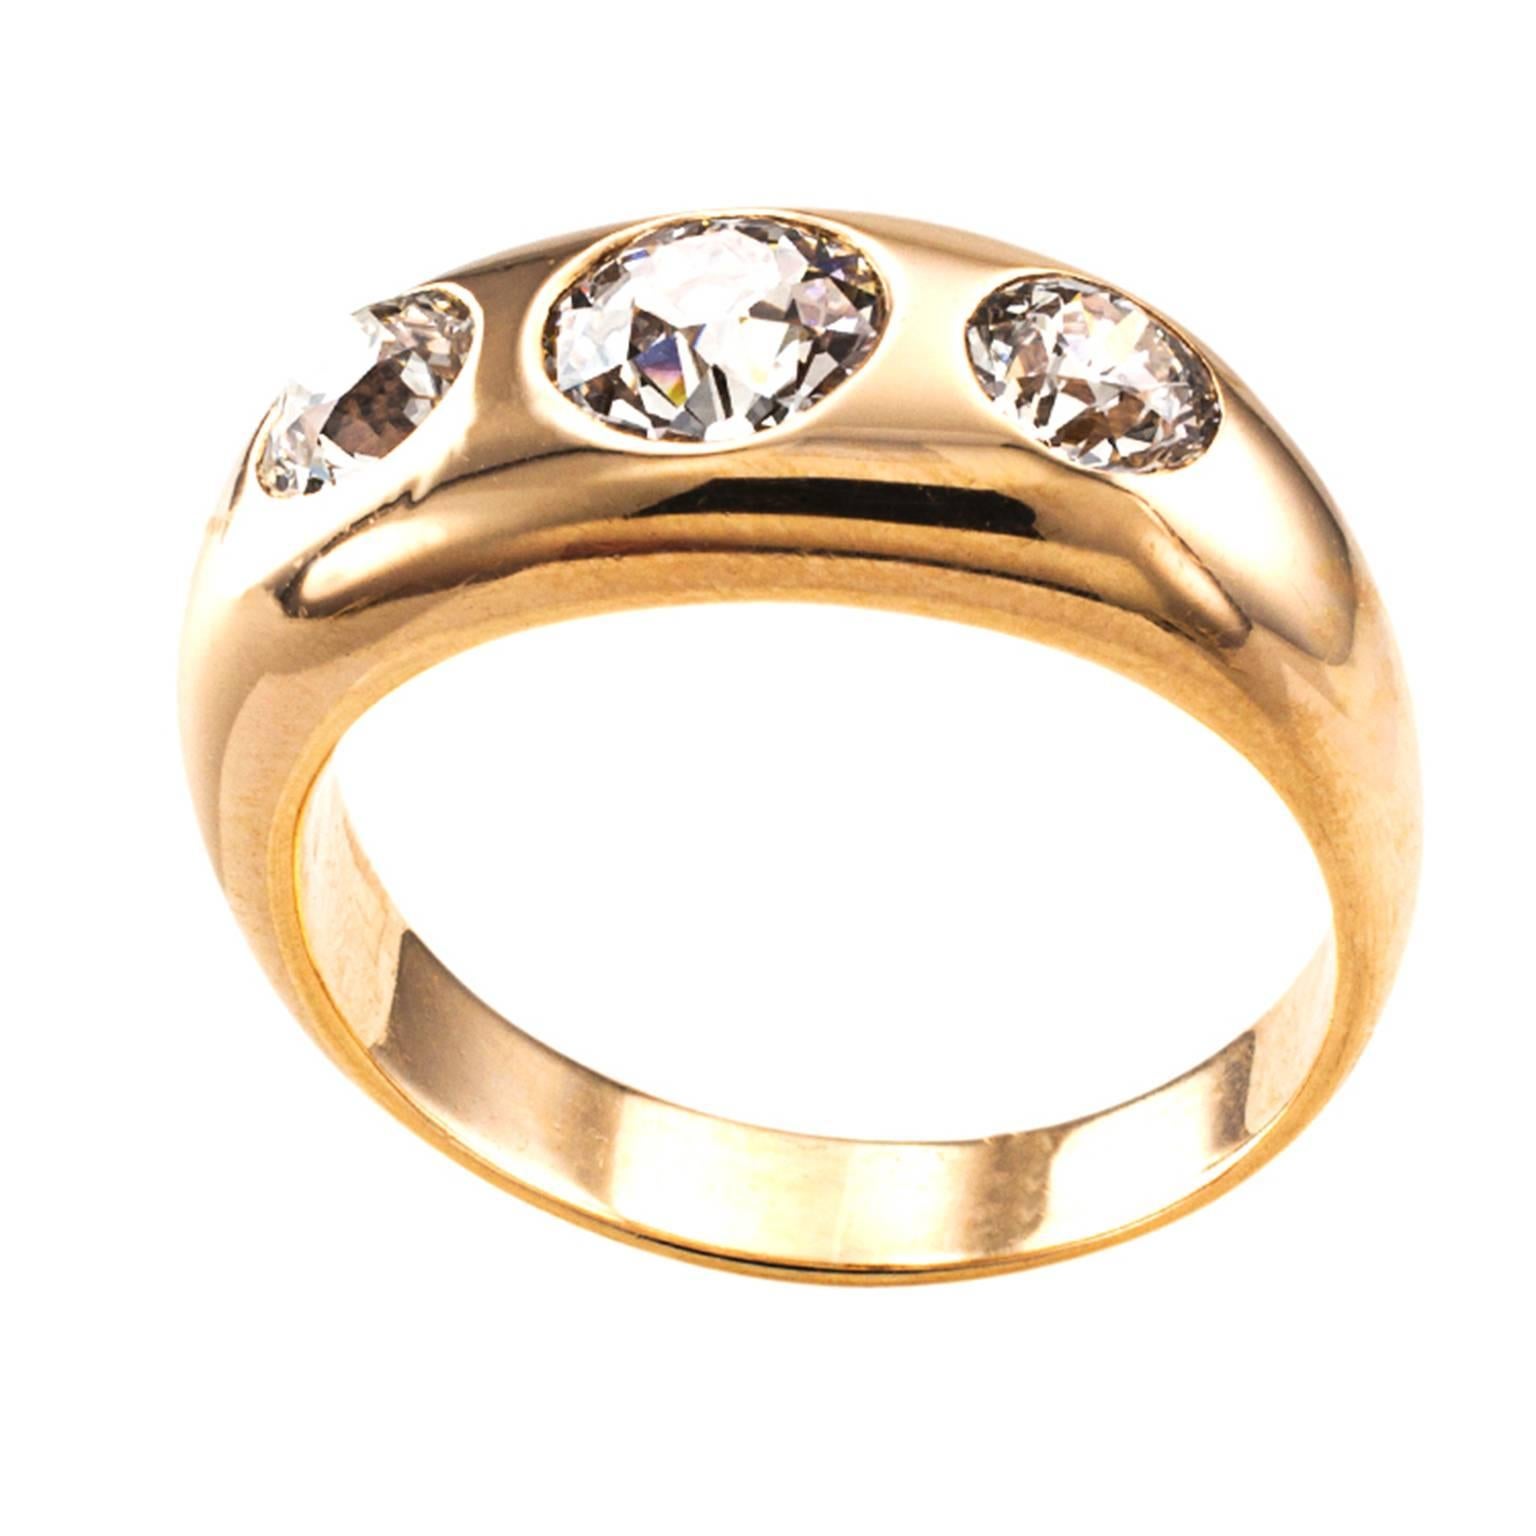 3 diamond gold ring